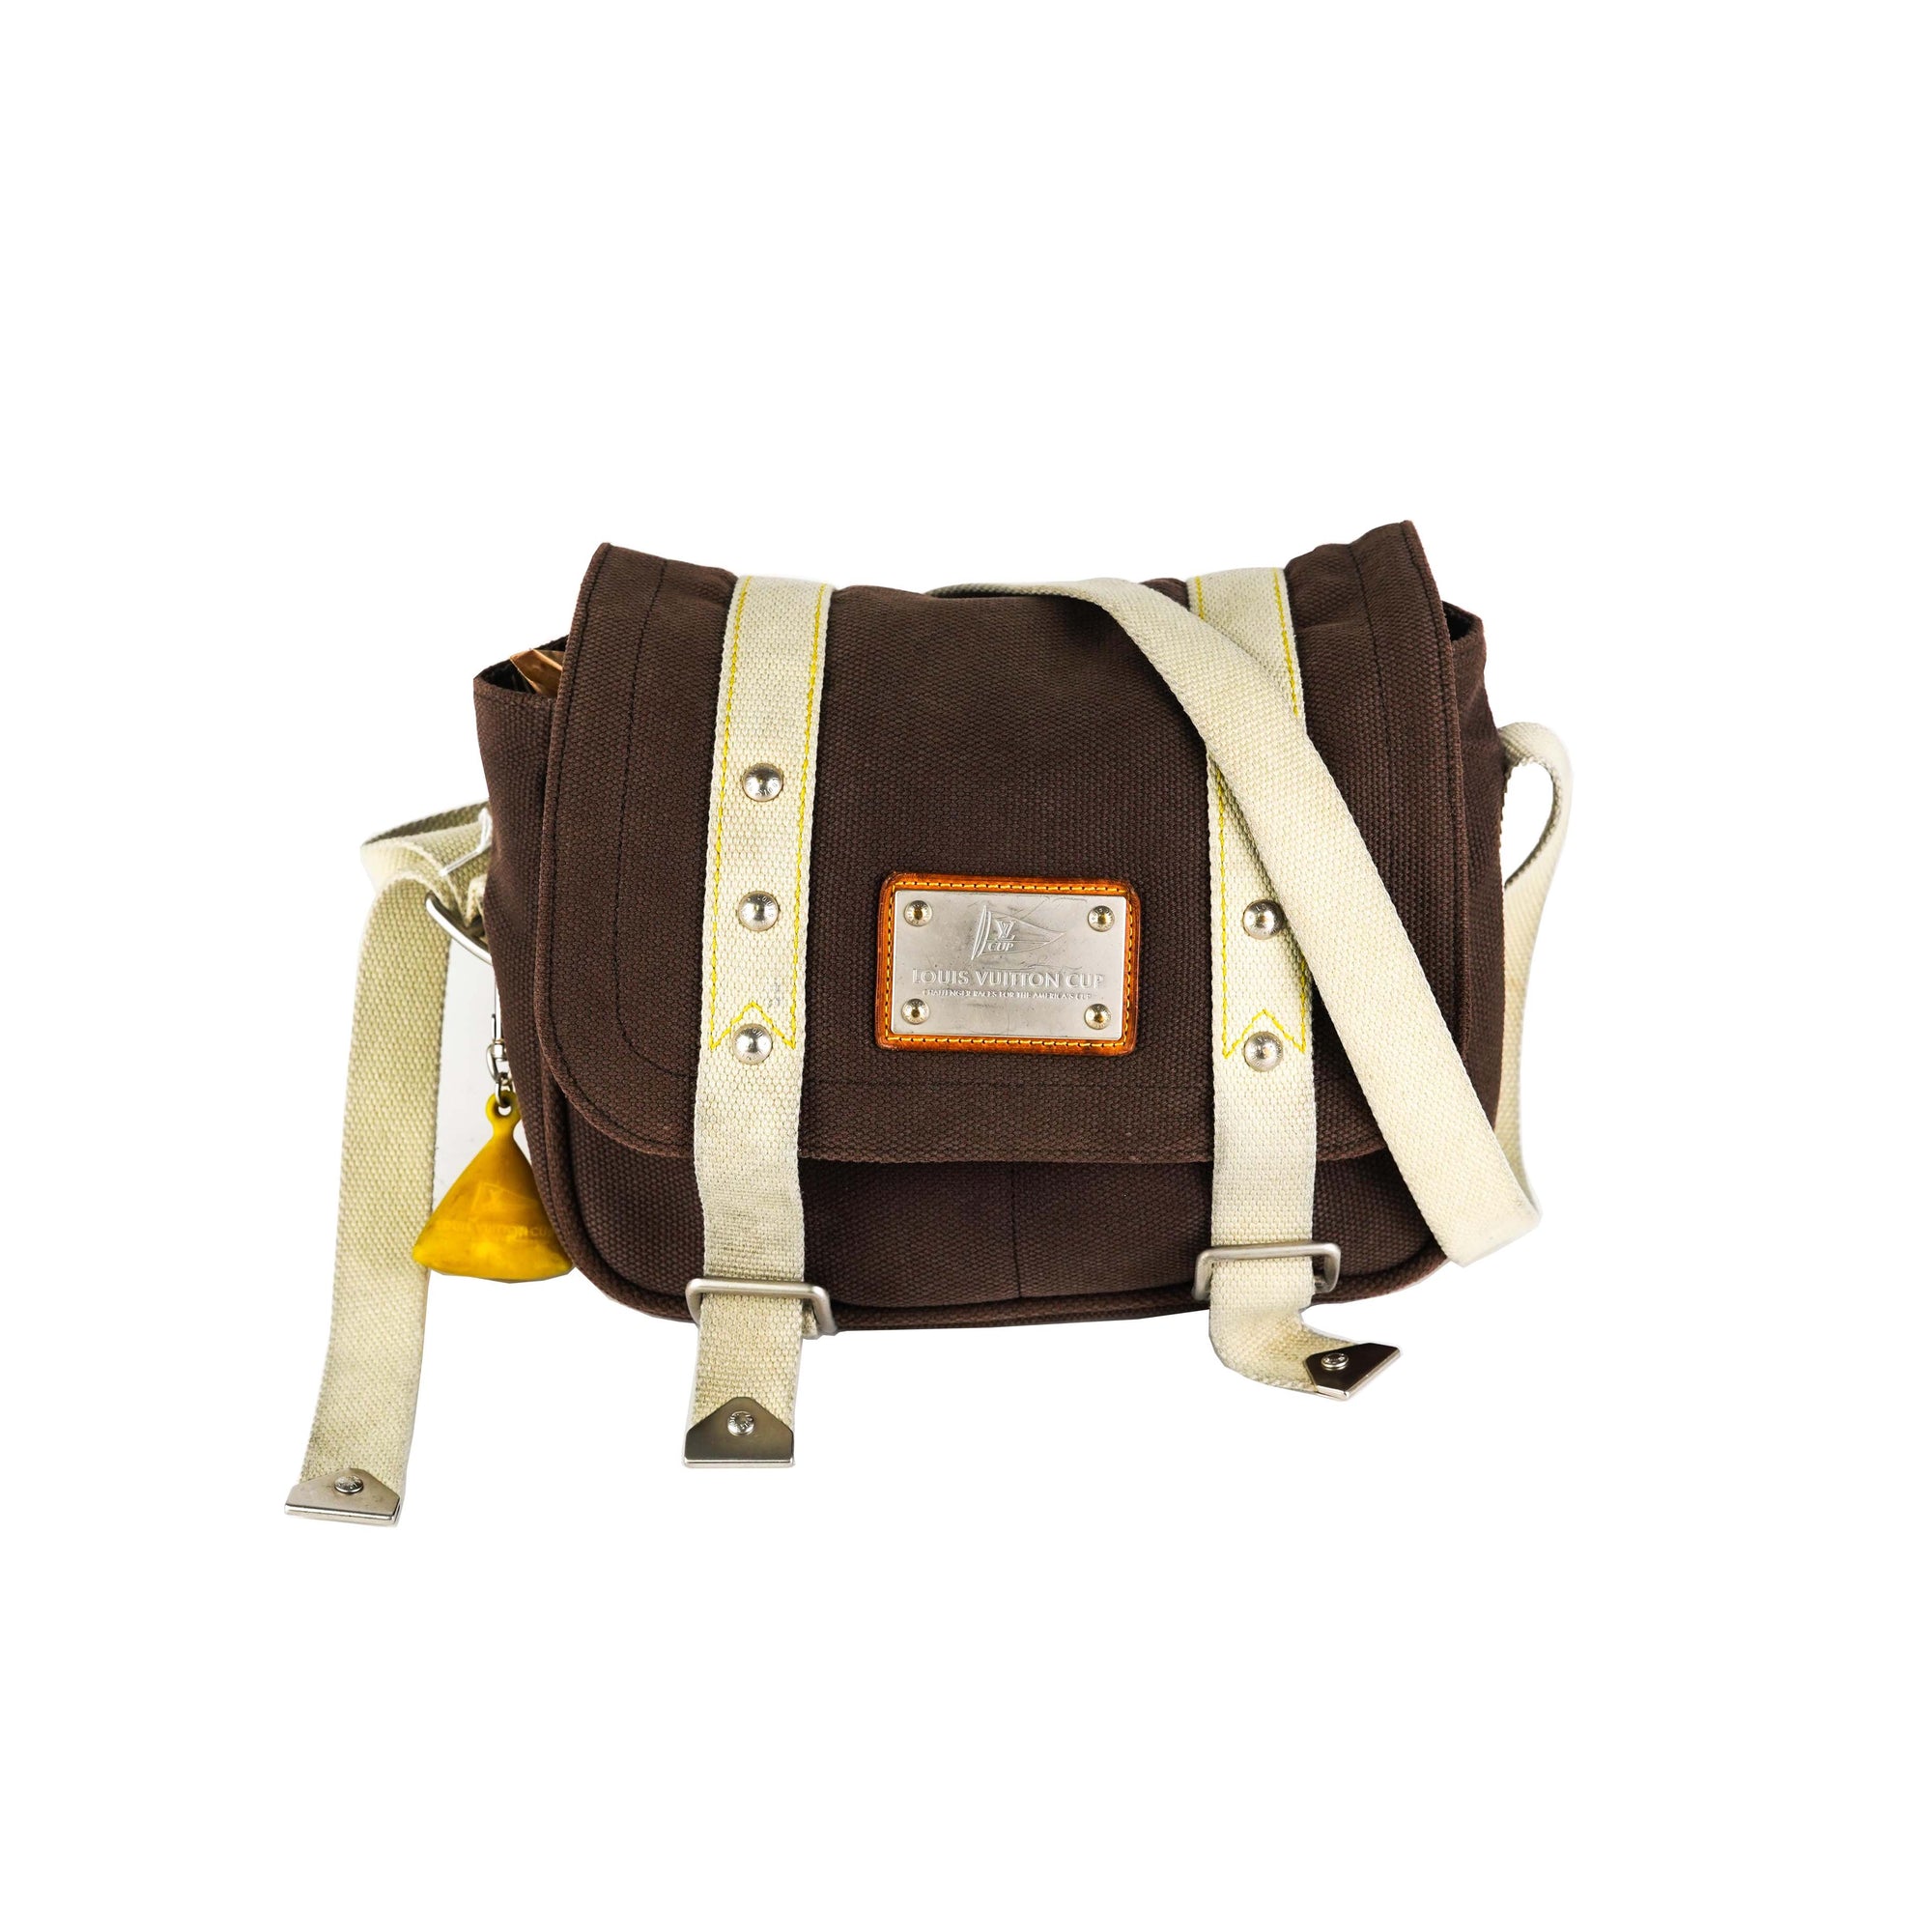 Louis Vuitton Messenger Bag Brown - THE PURSE AFFAIR